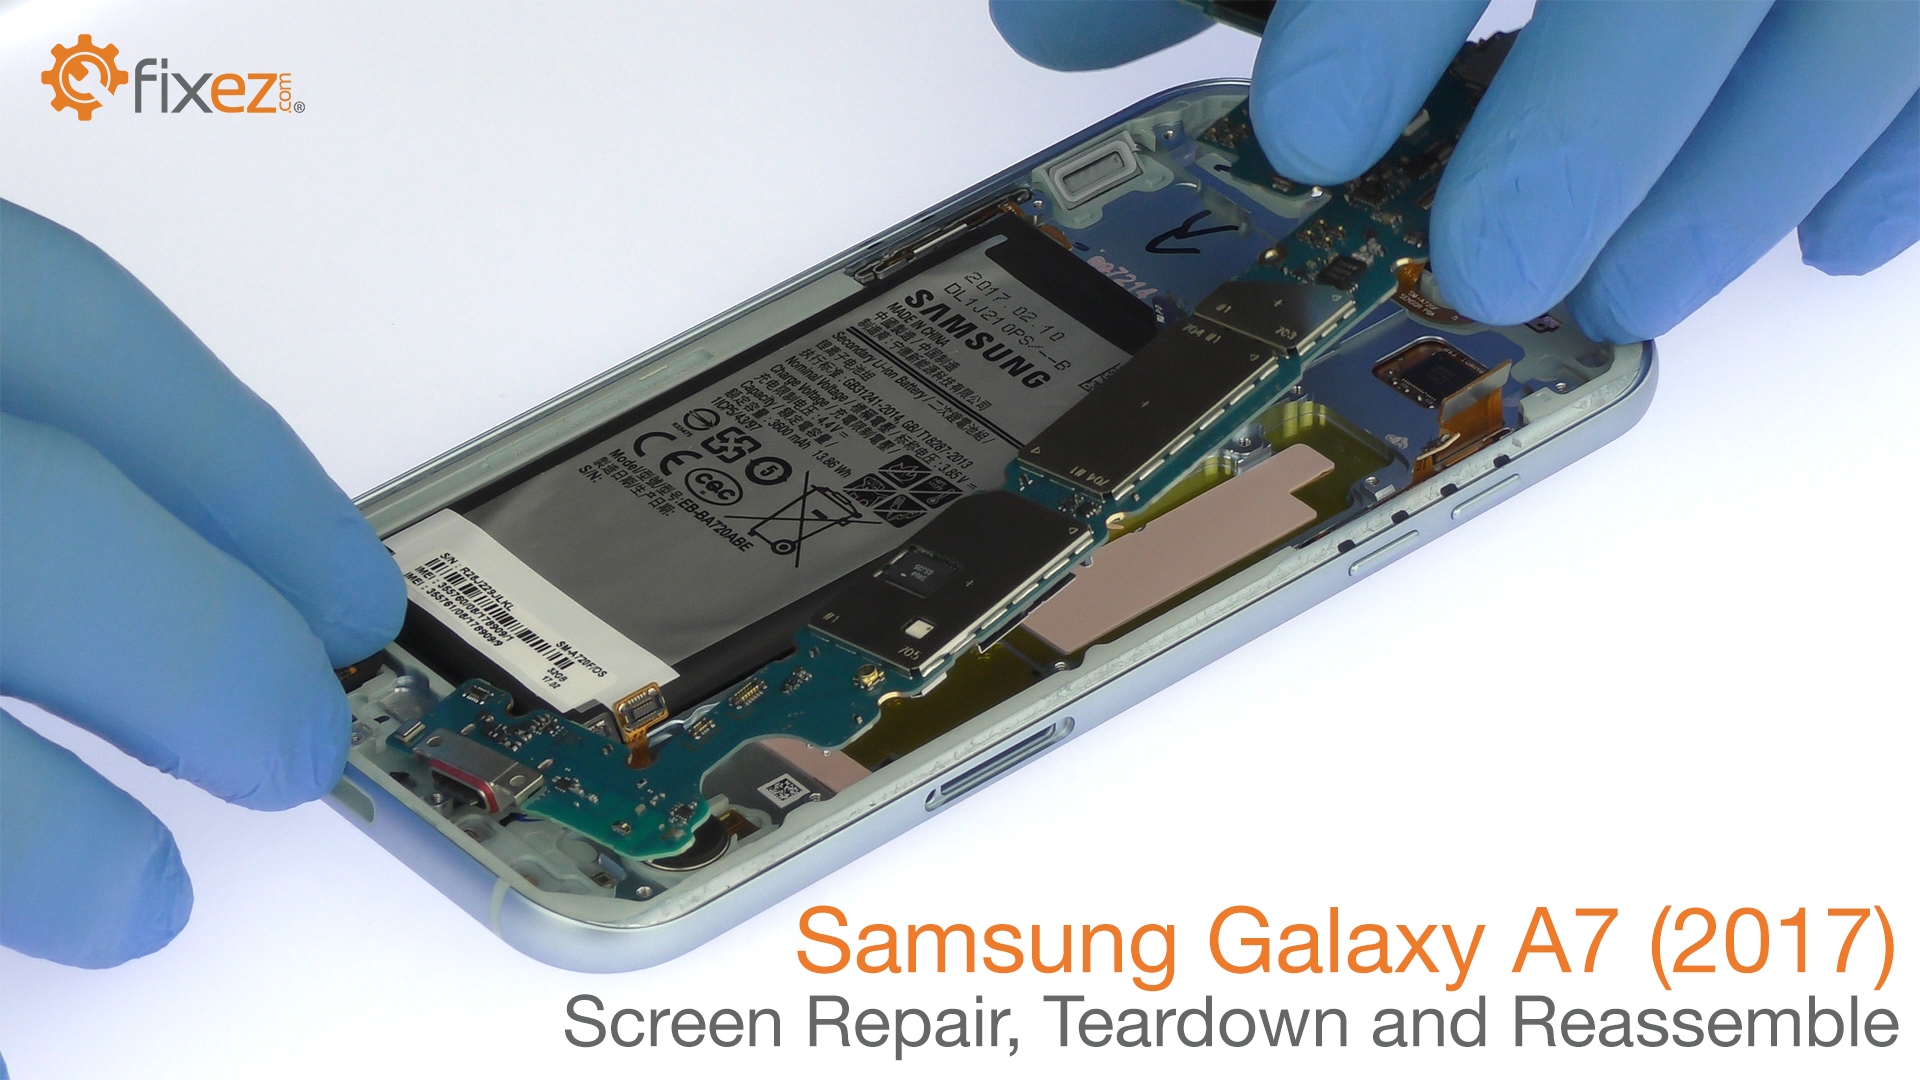 Samsung Galaxy A7 (2017) Screen Repair, Teardown and Reassemble